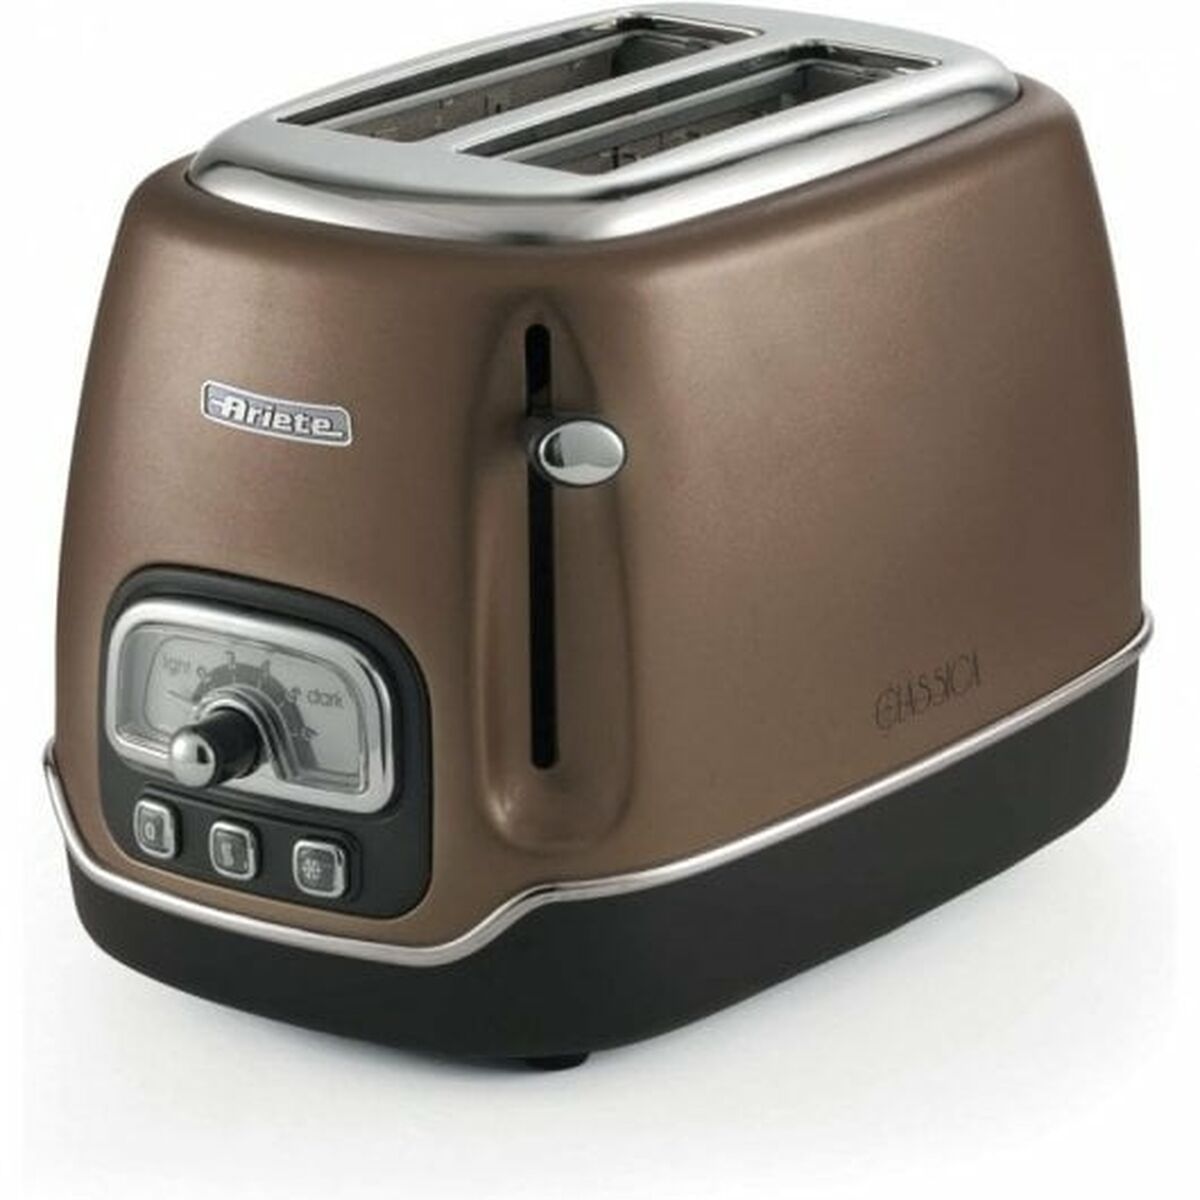 Kaufe Toaster Ariete Classica 815 W bei AWK Flagship um € 72.00